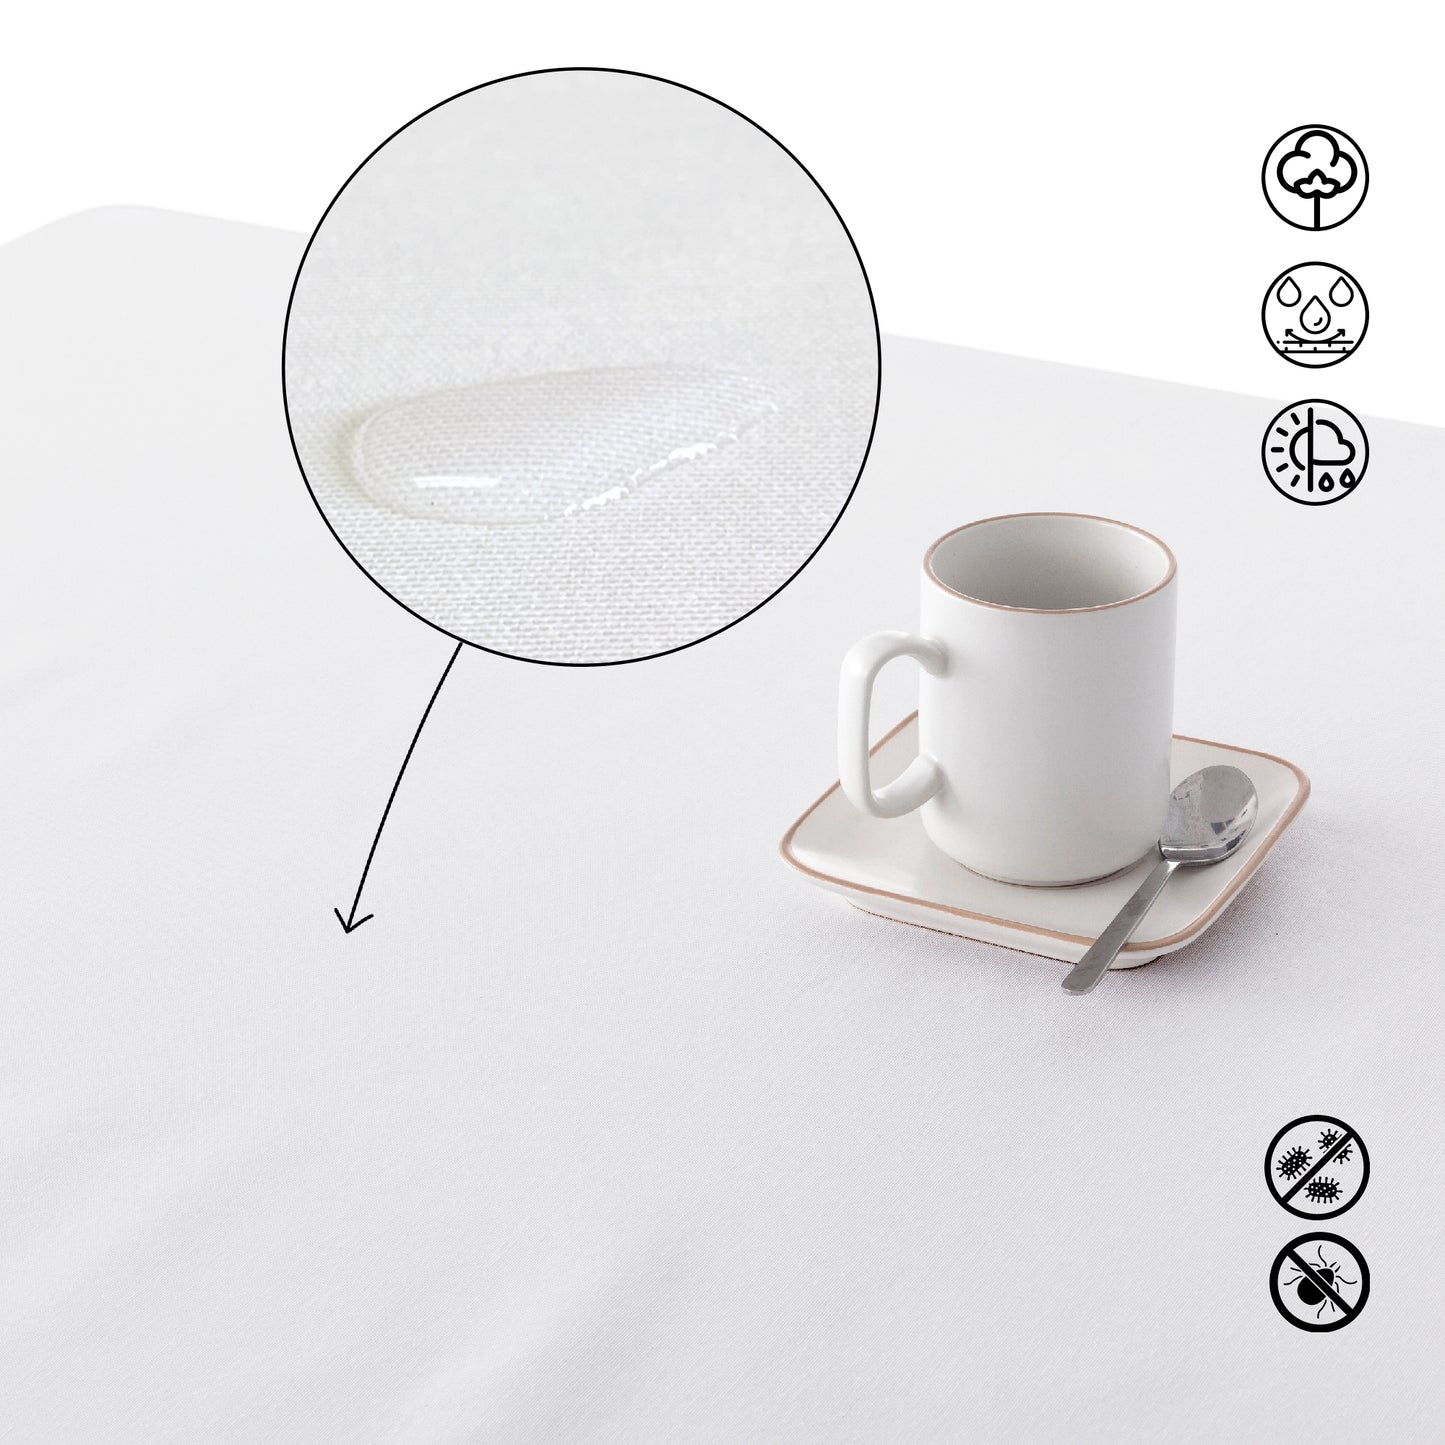 Water-repellent stain-resistant tablecloth Linen 100% Aqua